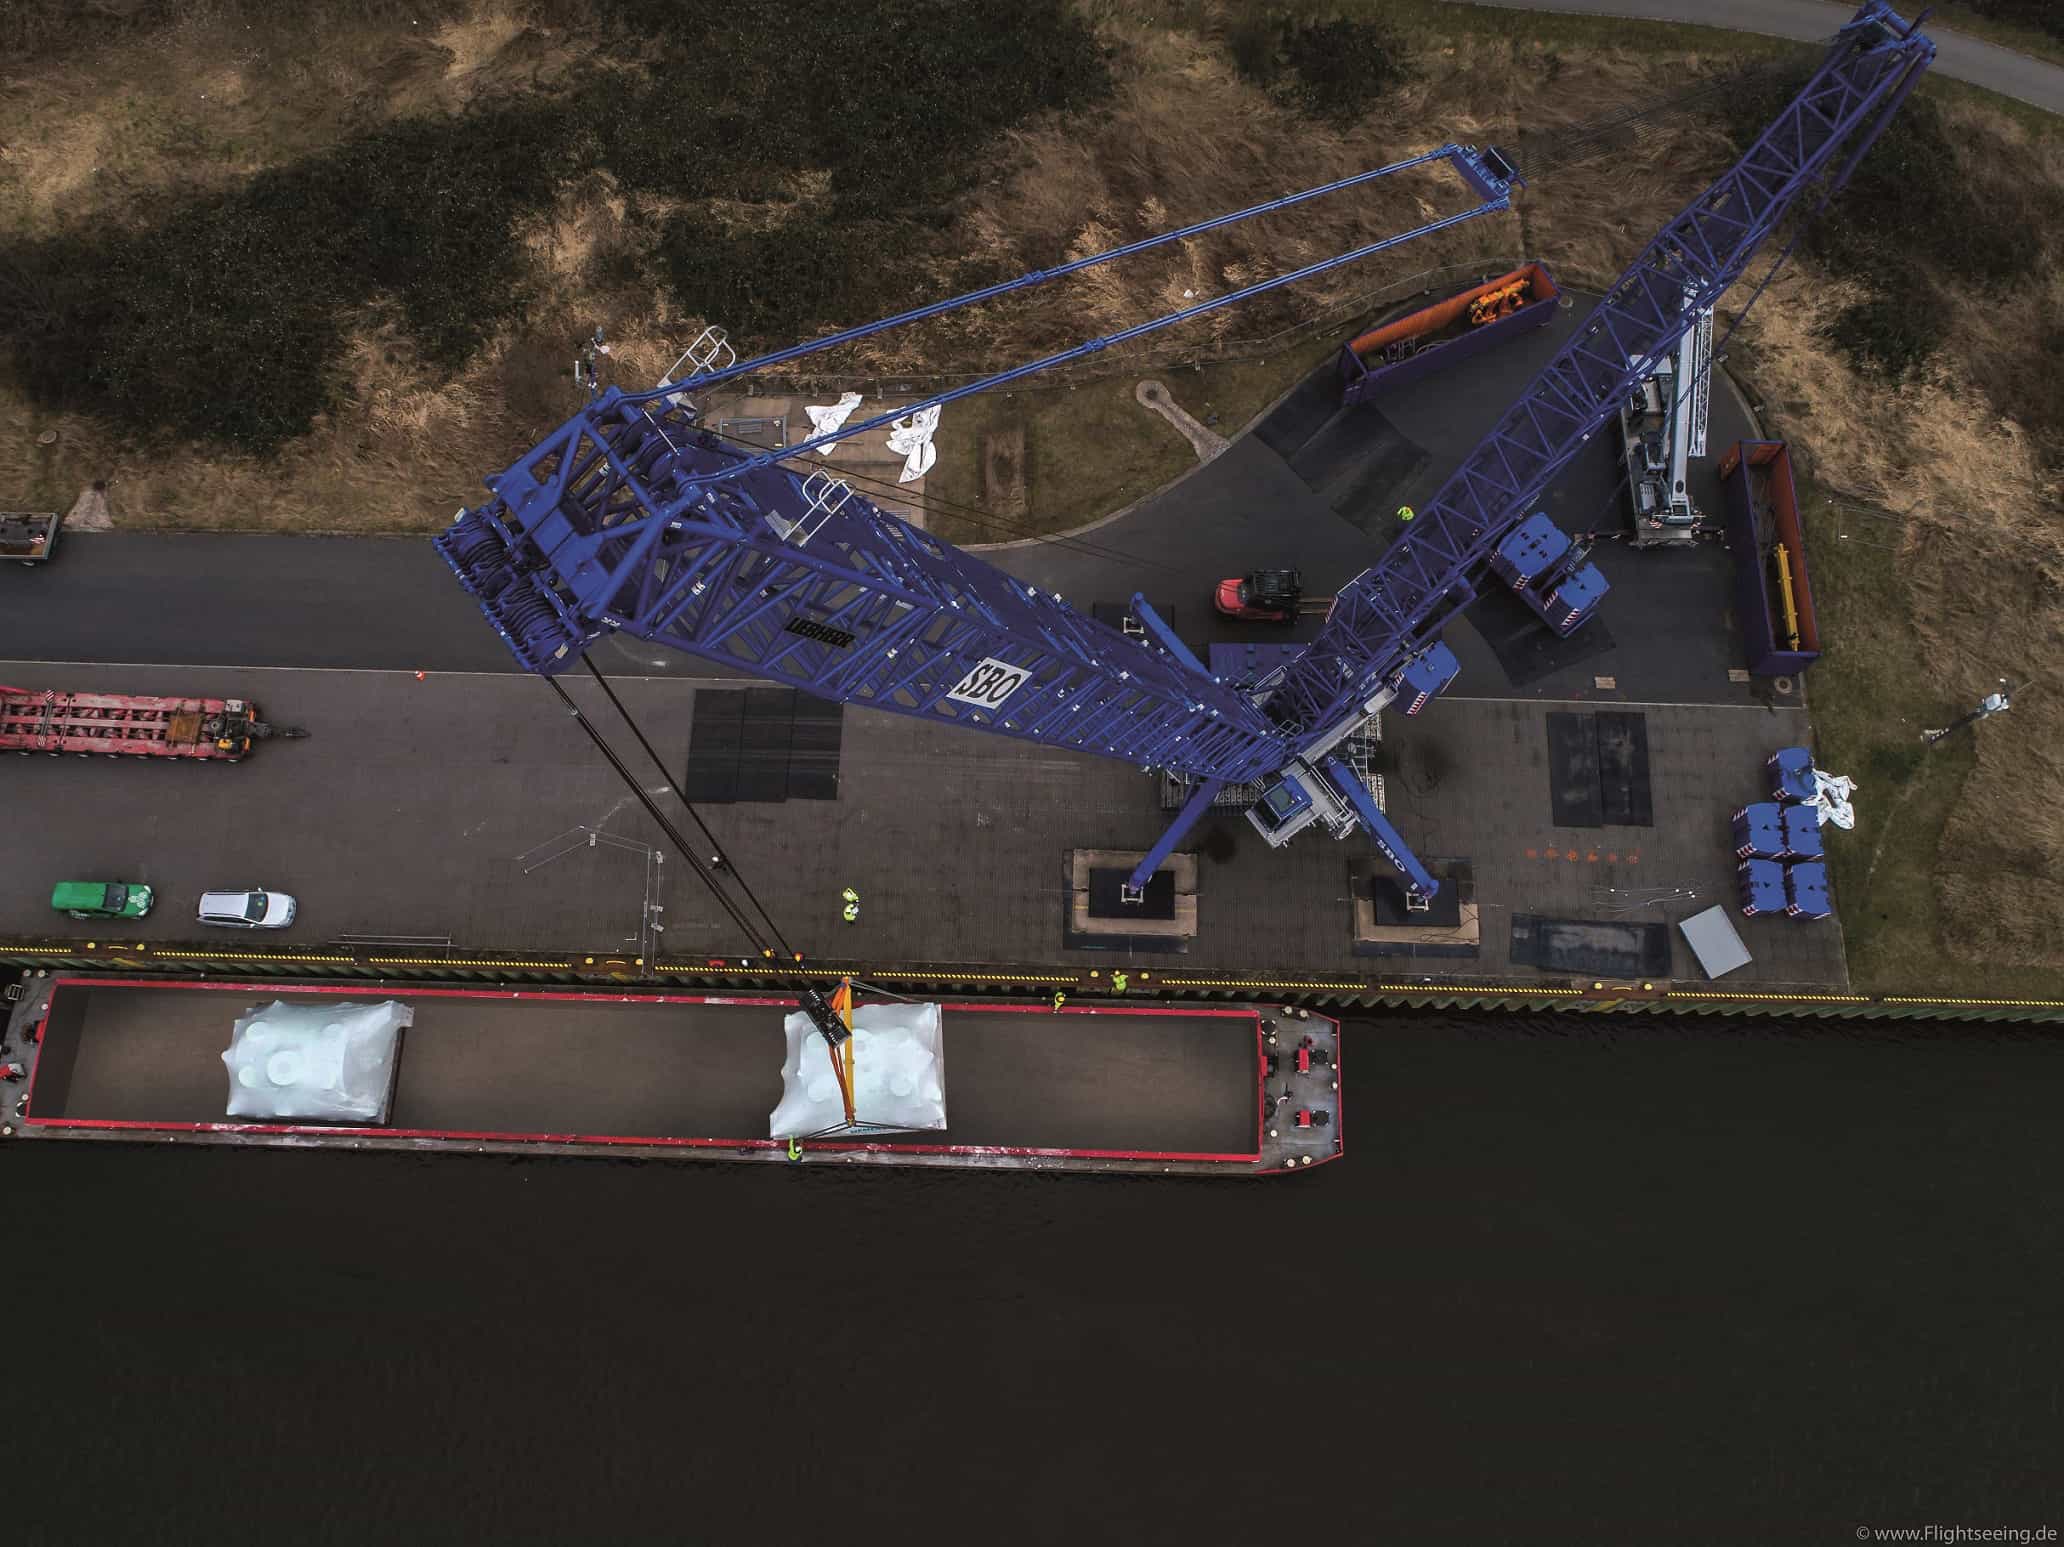 Spółka z grupy OT Logistics uruchamia usługę przewozu na Łabie